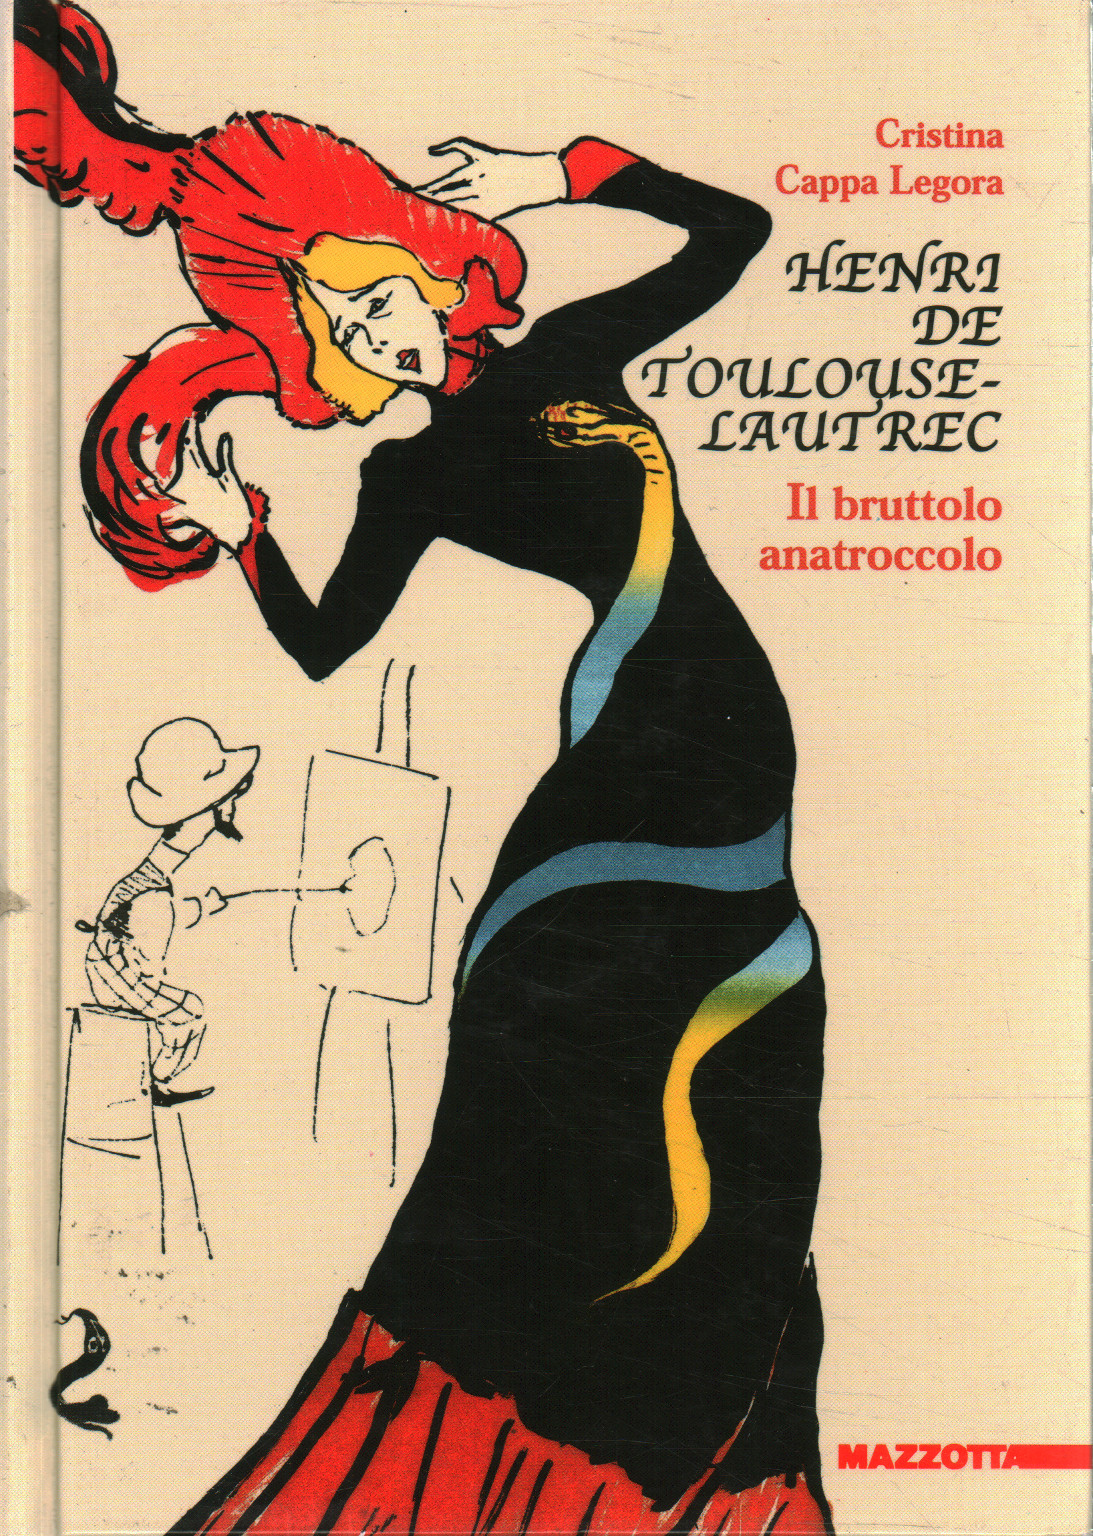 Henri de Toulouse-Lautrec, Cristina Cappa Legora